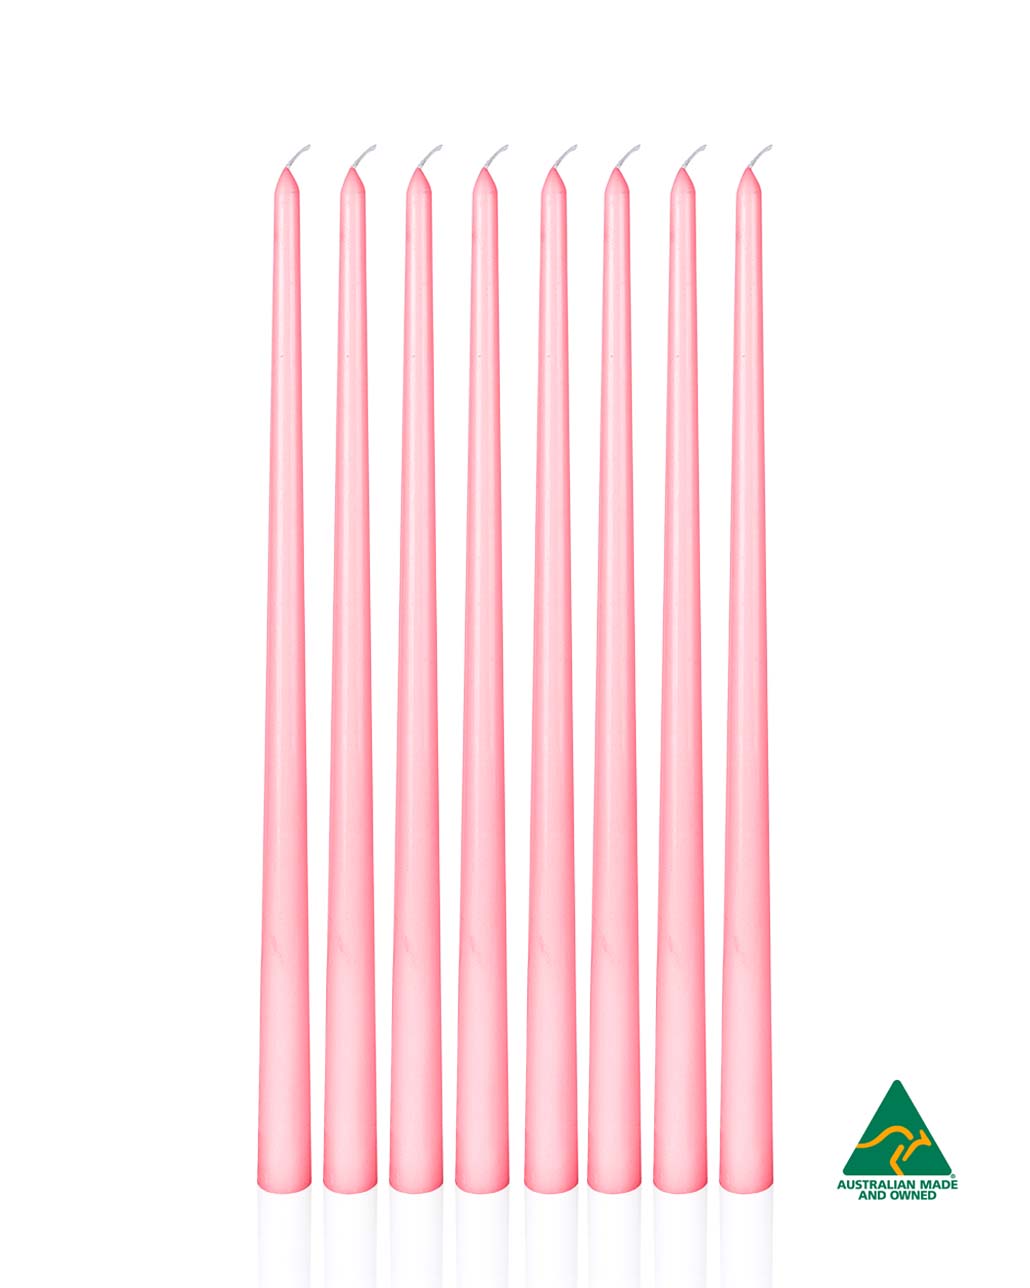 2cm x 40cm Candle (8pcs)